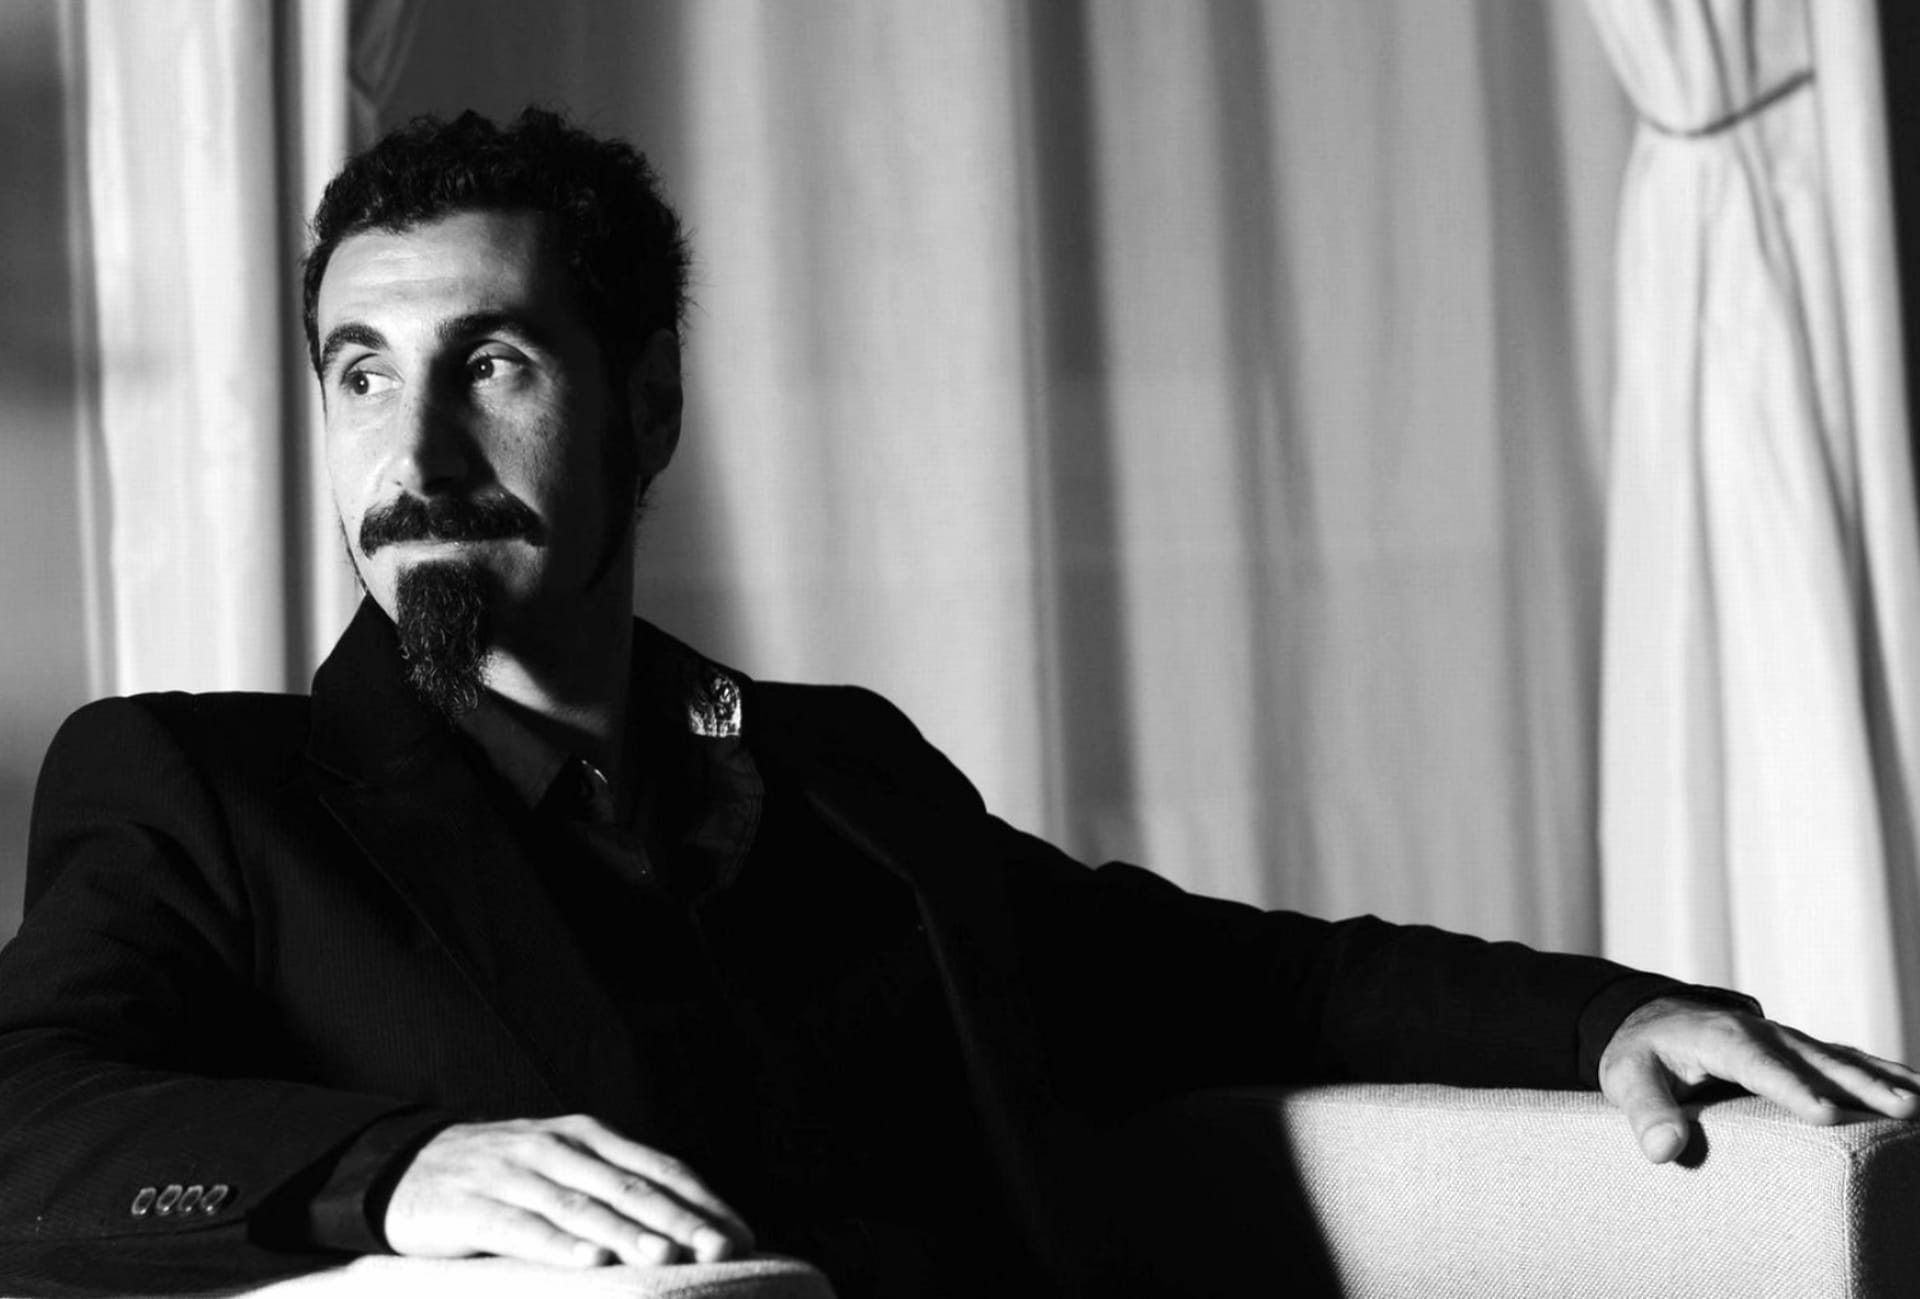 Serj Tankian at 640 x 960 iPhone 4 size wallpapers HD quality